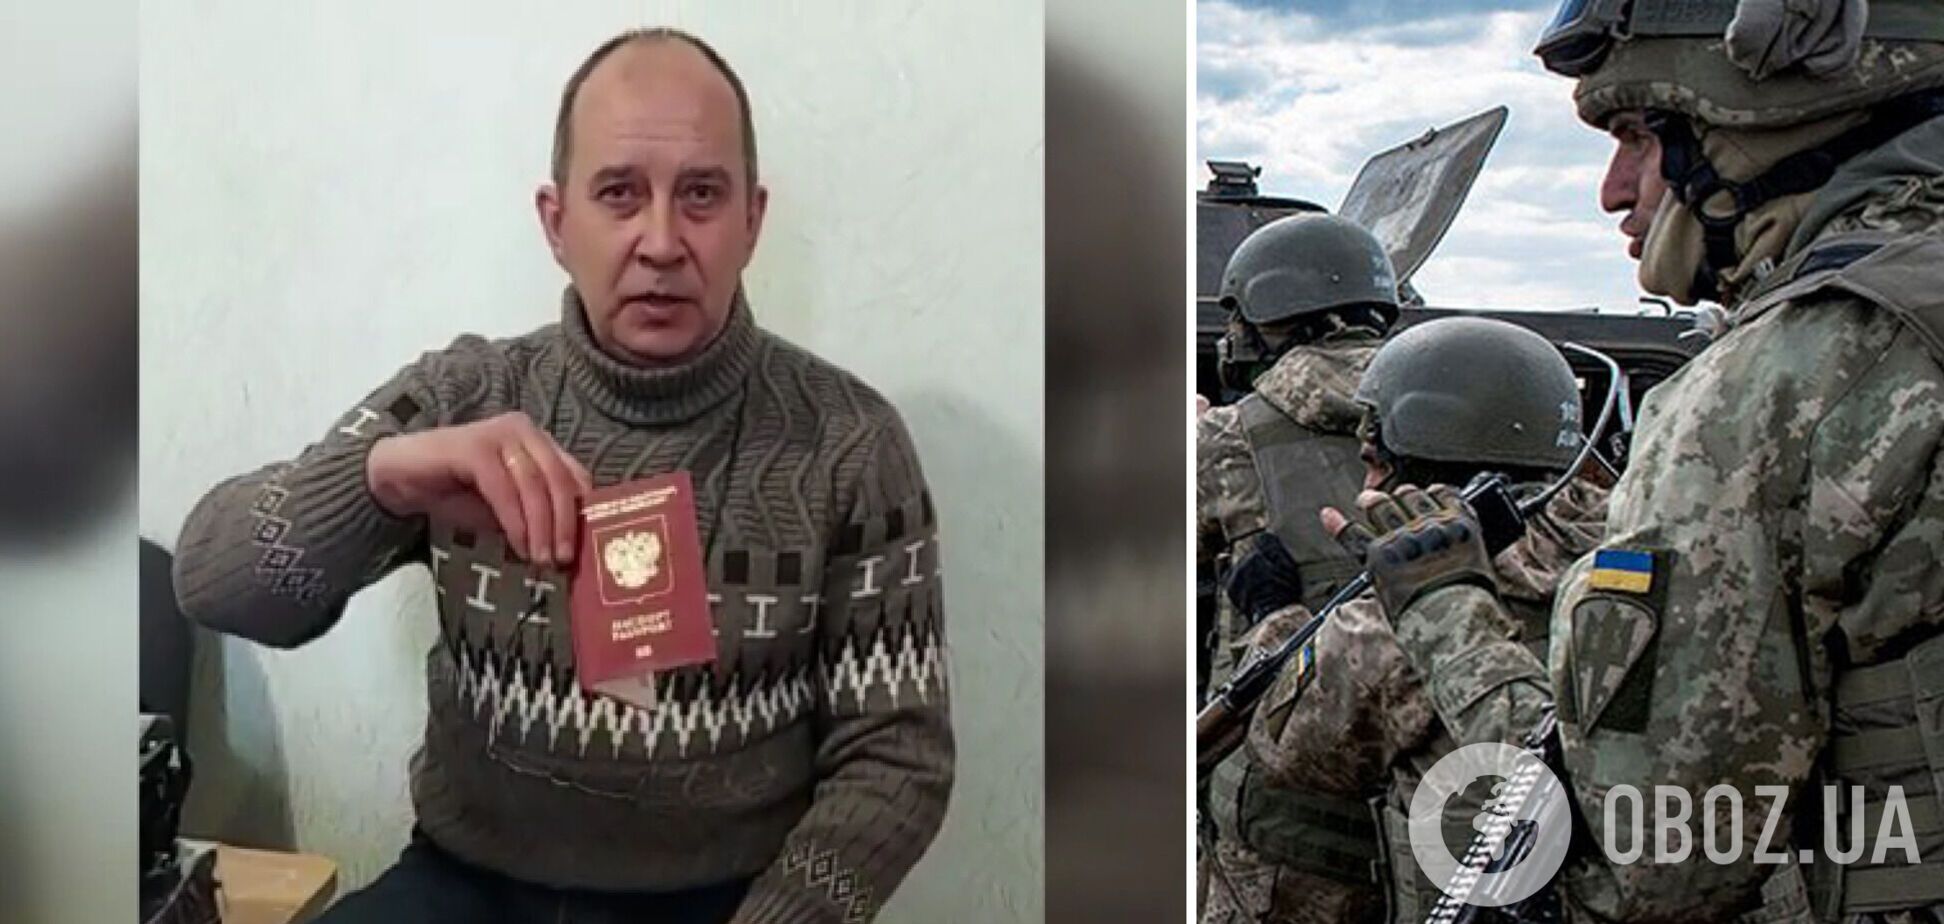 Коренной россиянин пришел в СБУ и заявил о желании воевать за Украину. Видео